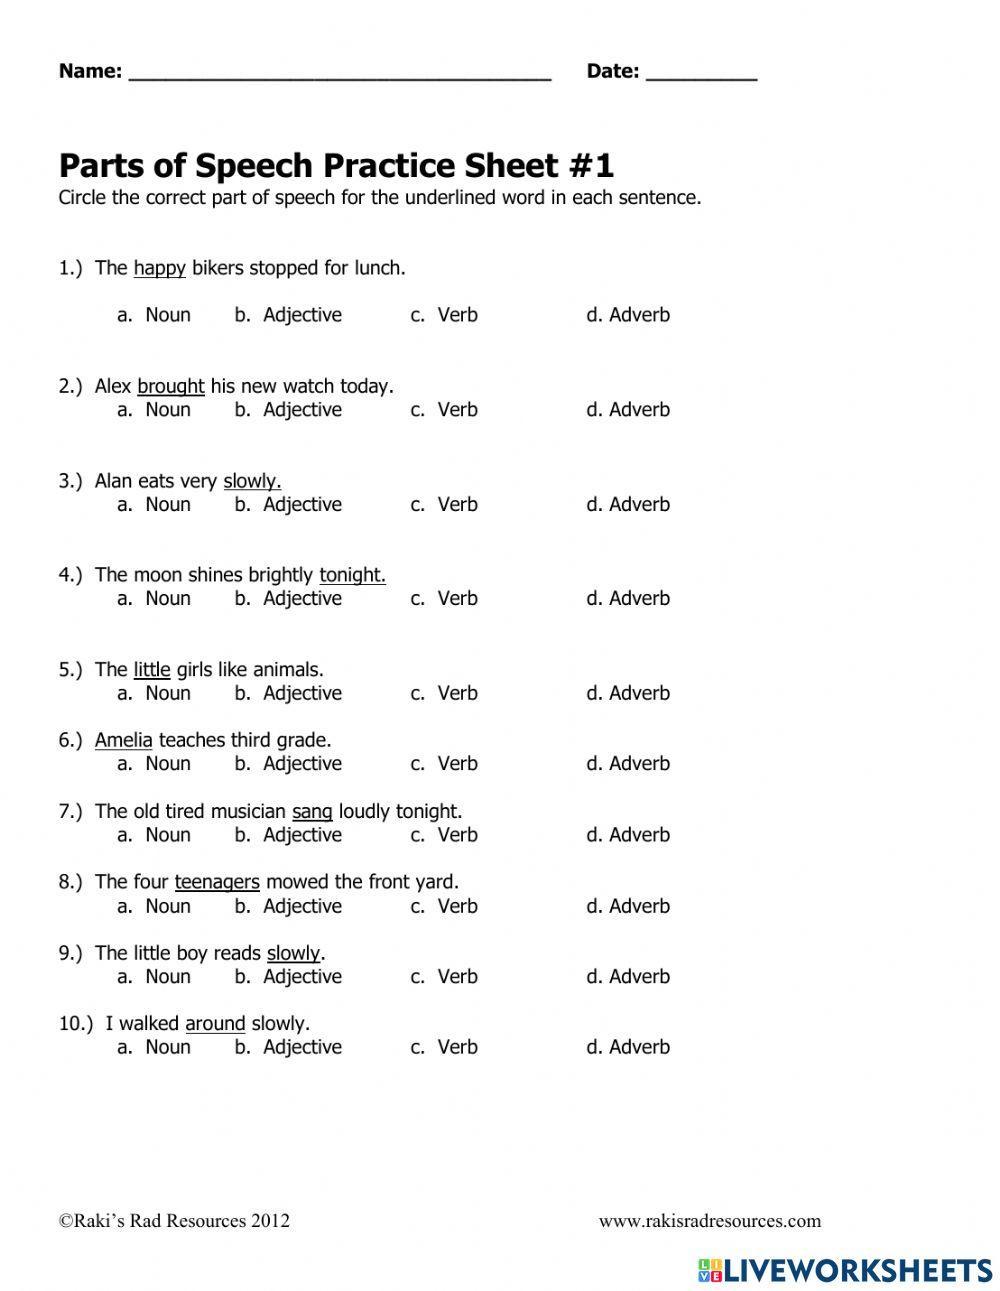 Parts of Speech Practice